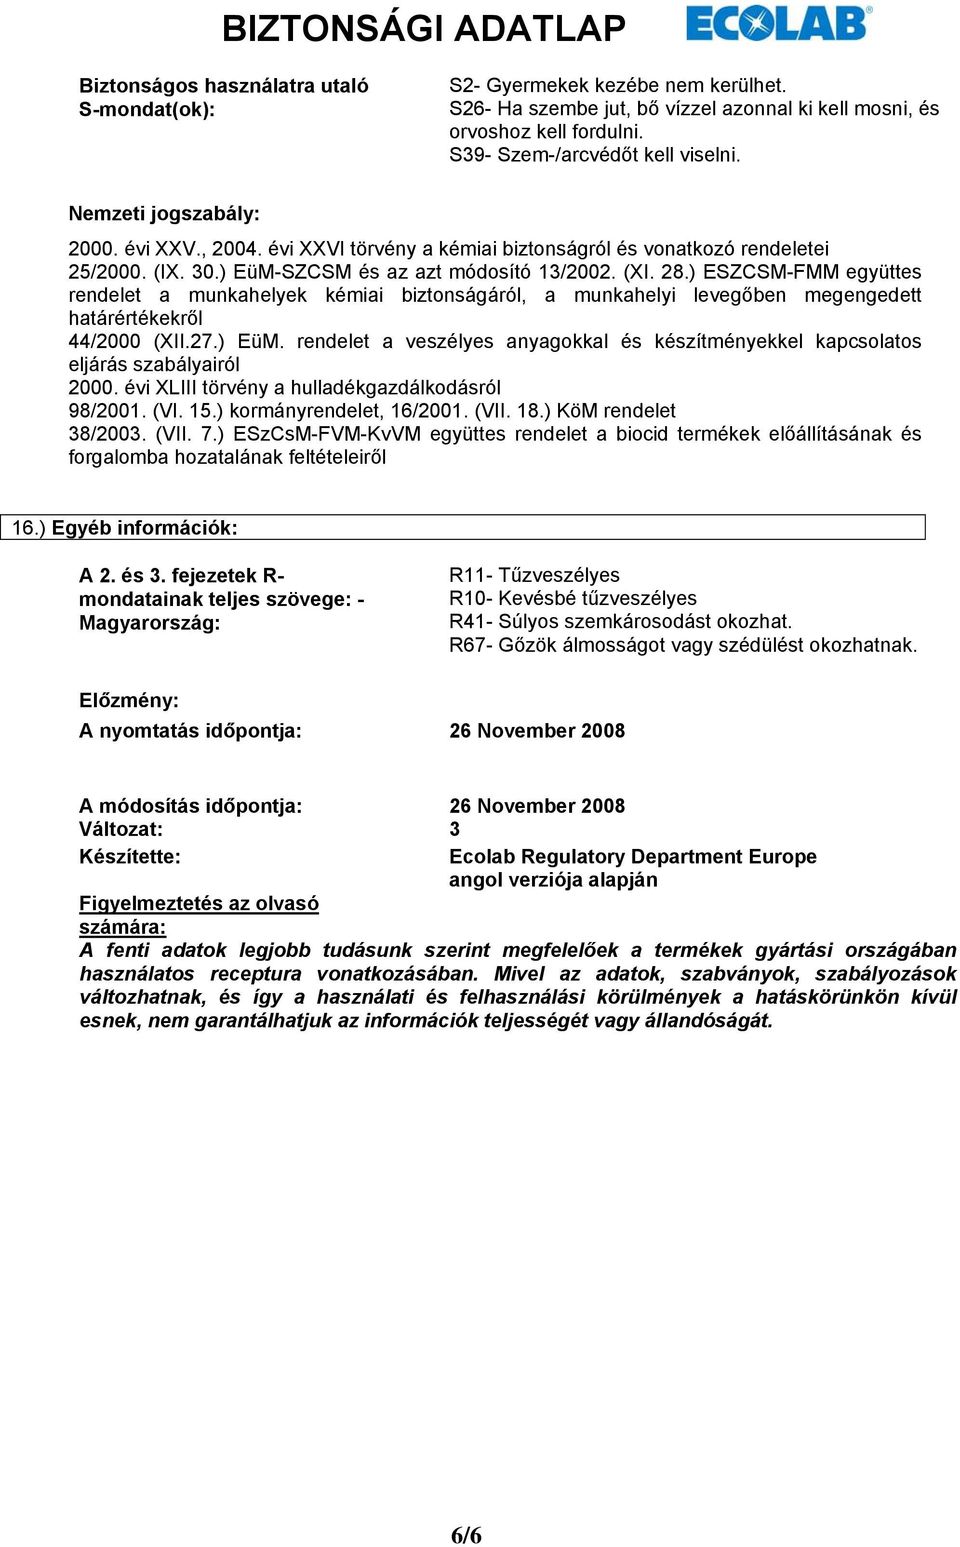 ) ESZCSM-FMM együttes rendelet a munkahelyek kémiai biztonságáról, a munkahelyi levegőben megengedett határértékekről 44/2000 (XII.27.) EüM.